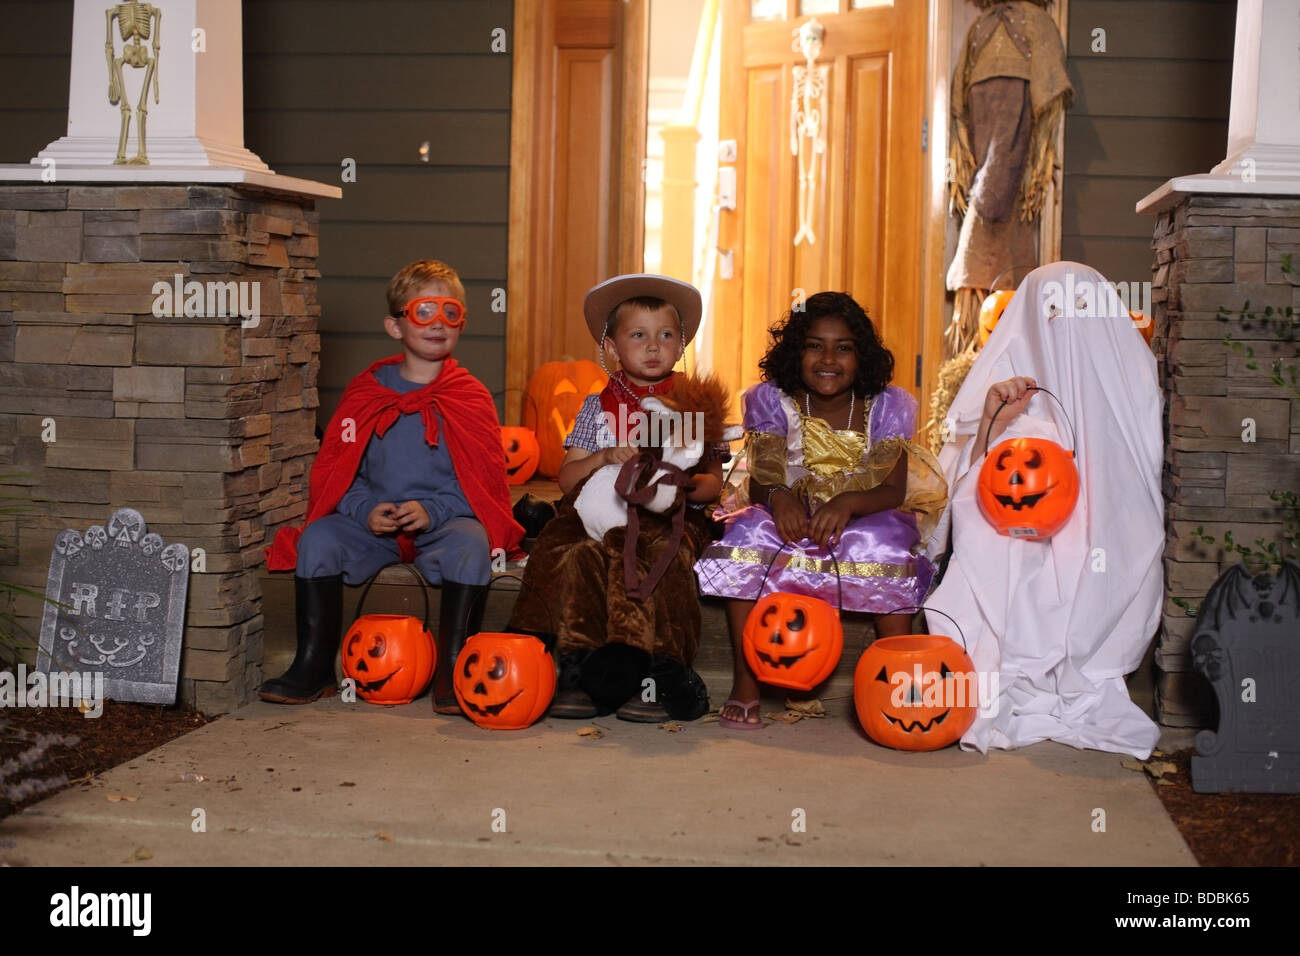 Gruppe von Kindern in Halloween-Kostümen Stockfoto